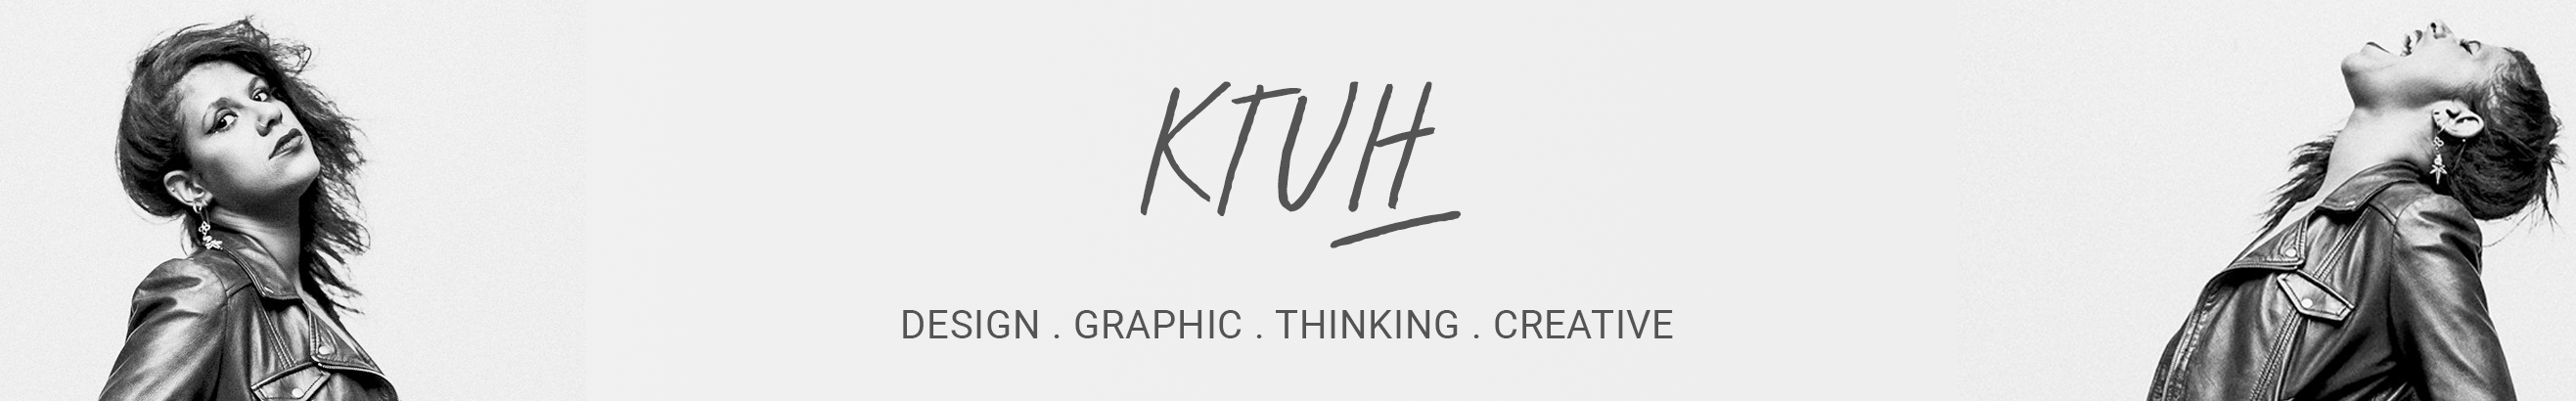 Rafael Ktuh's profile banner